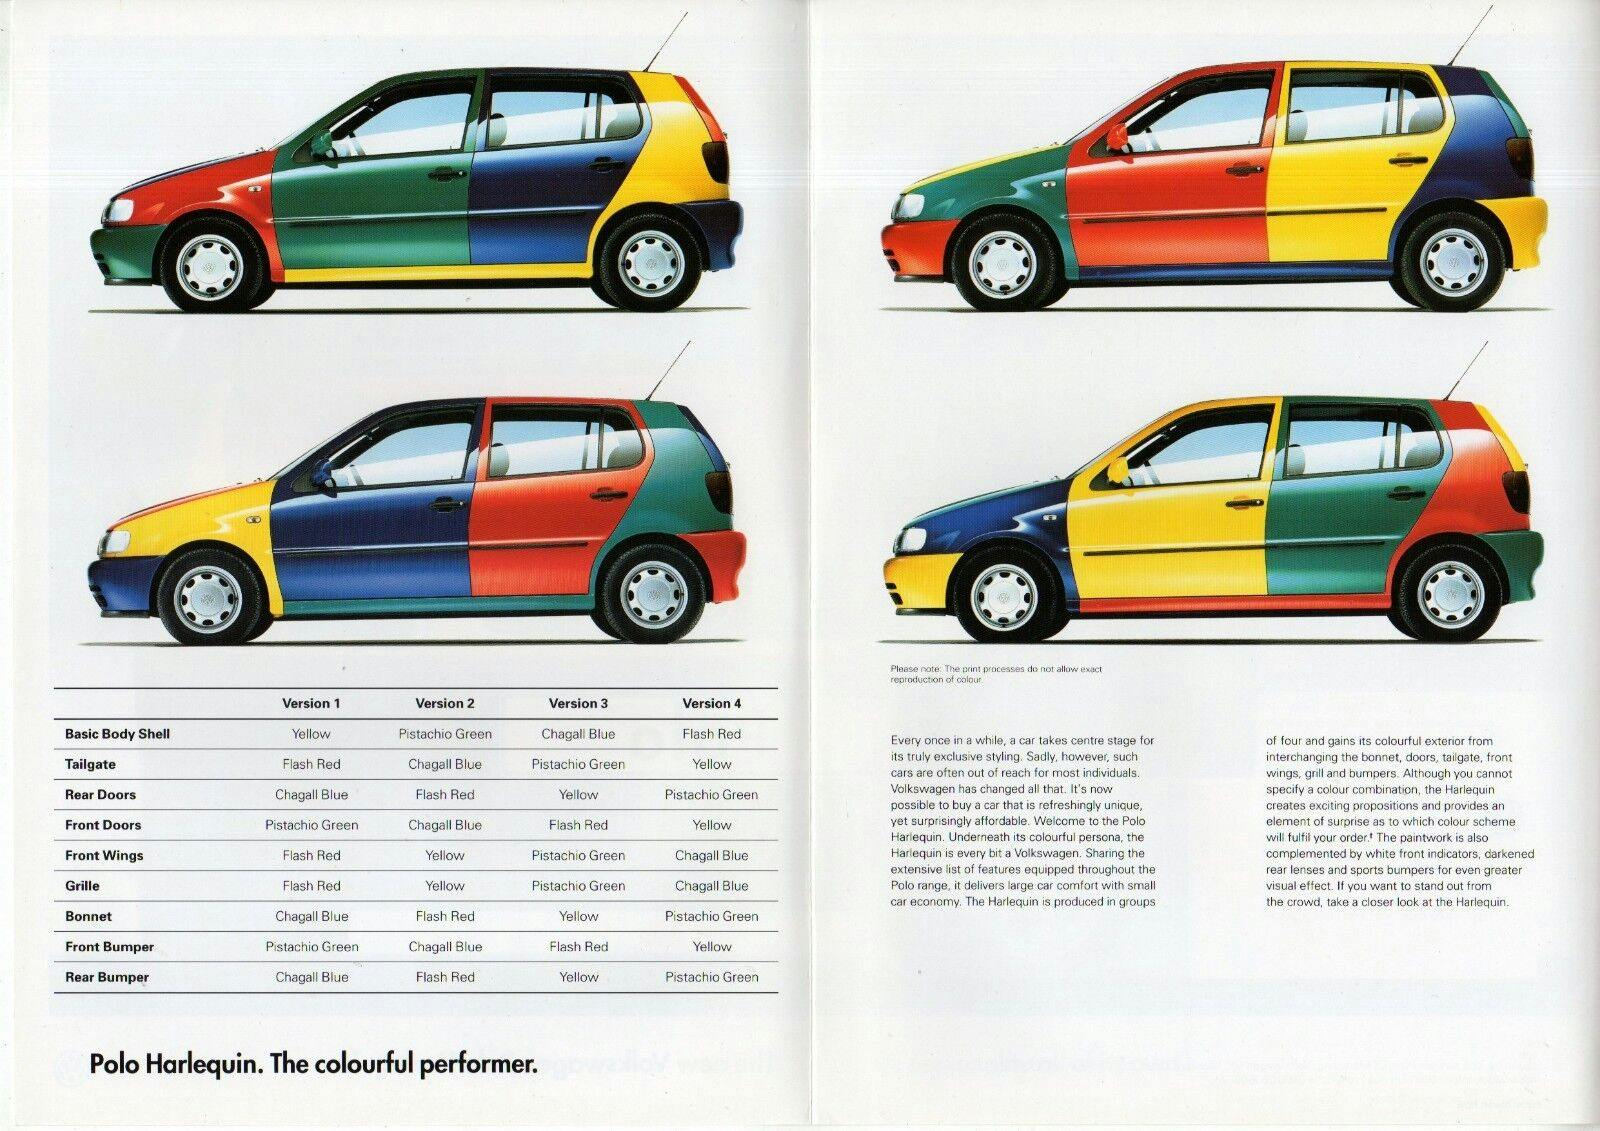 Volkswagen Polo Harlequin brochure